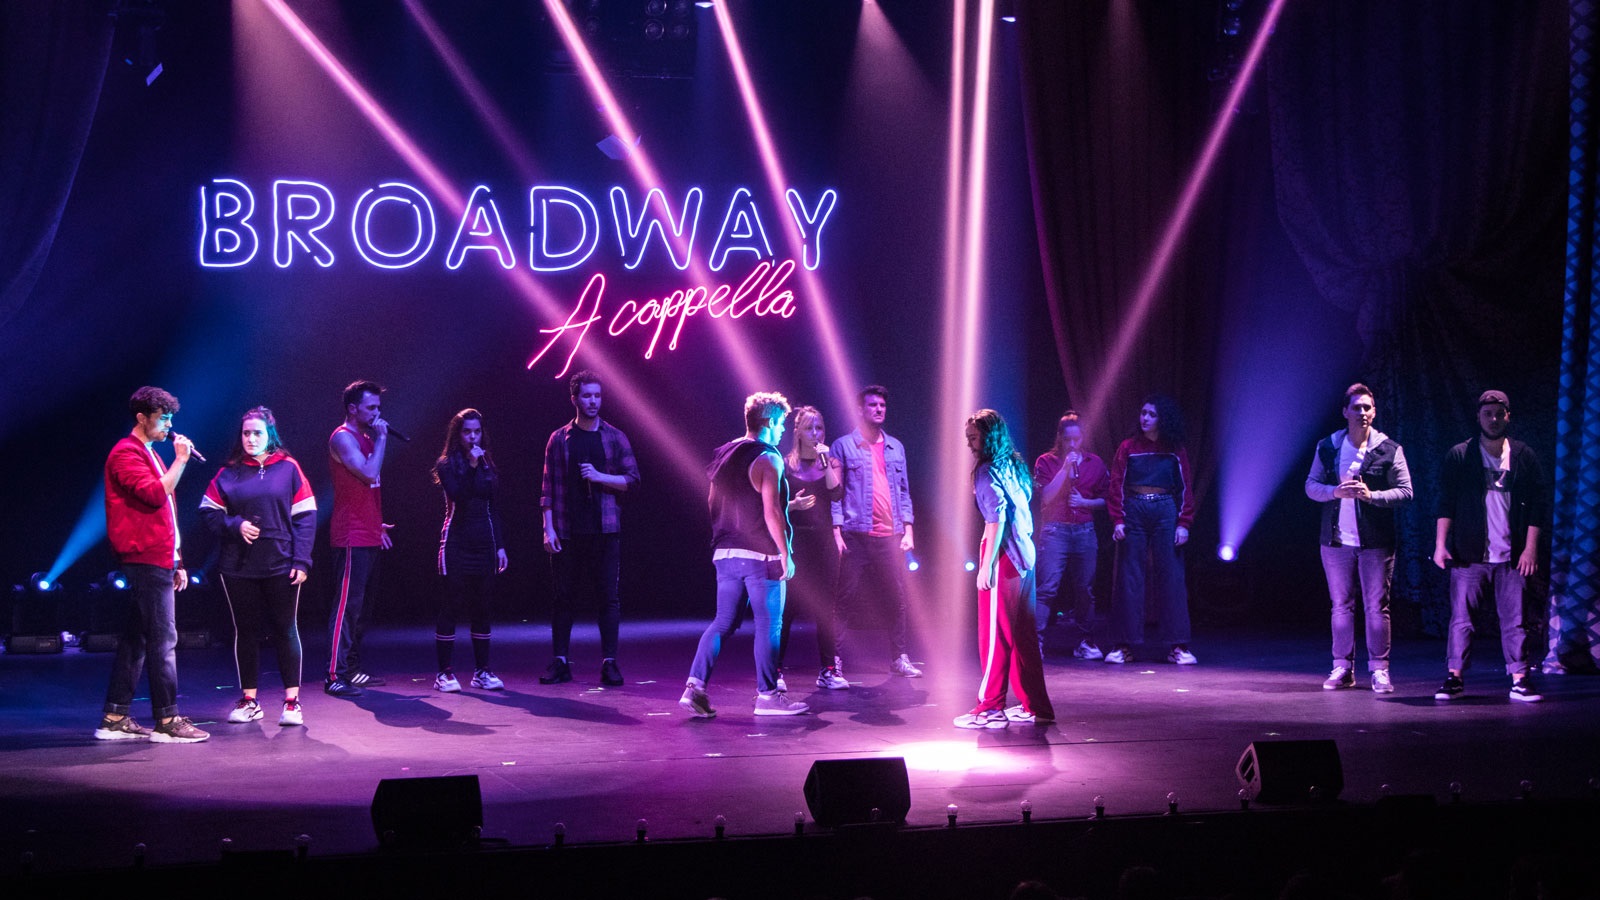 Broadway a cappella